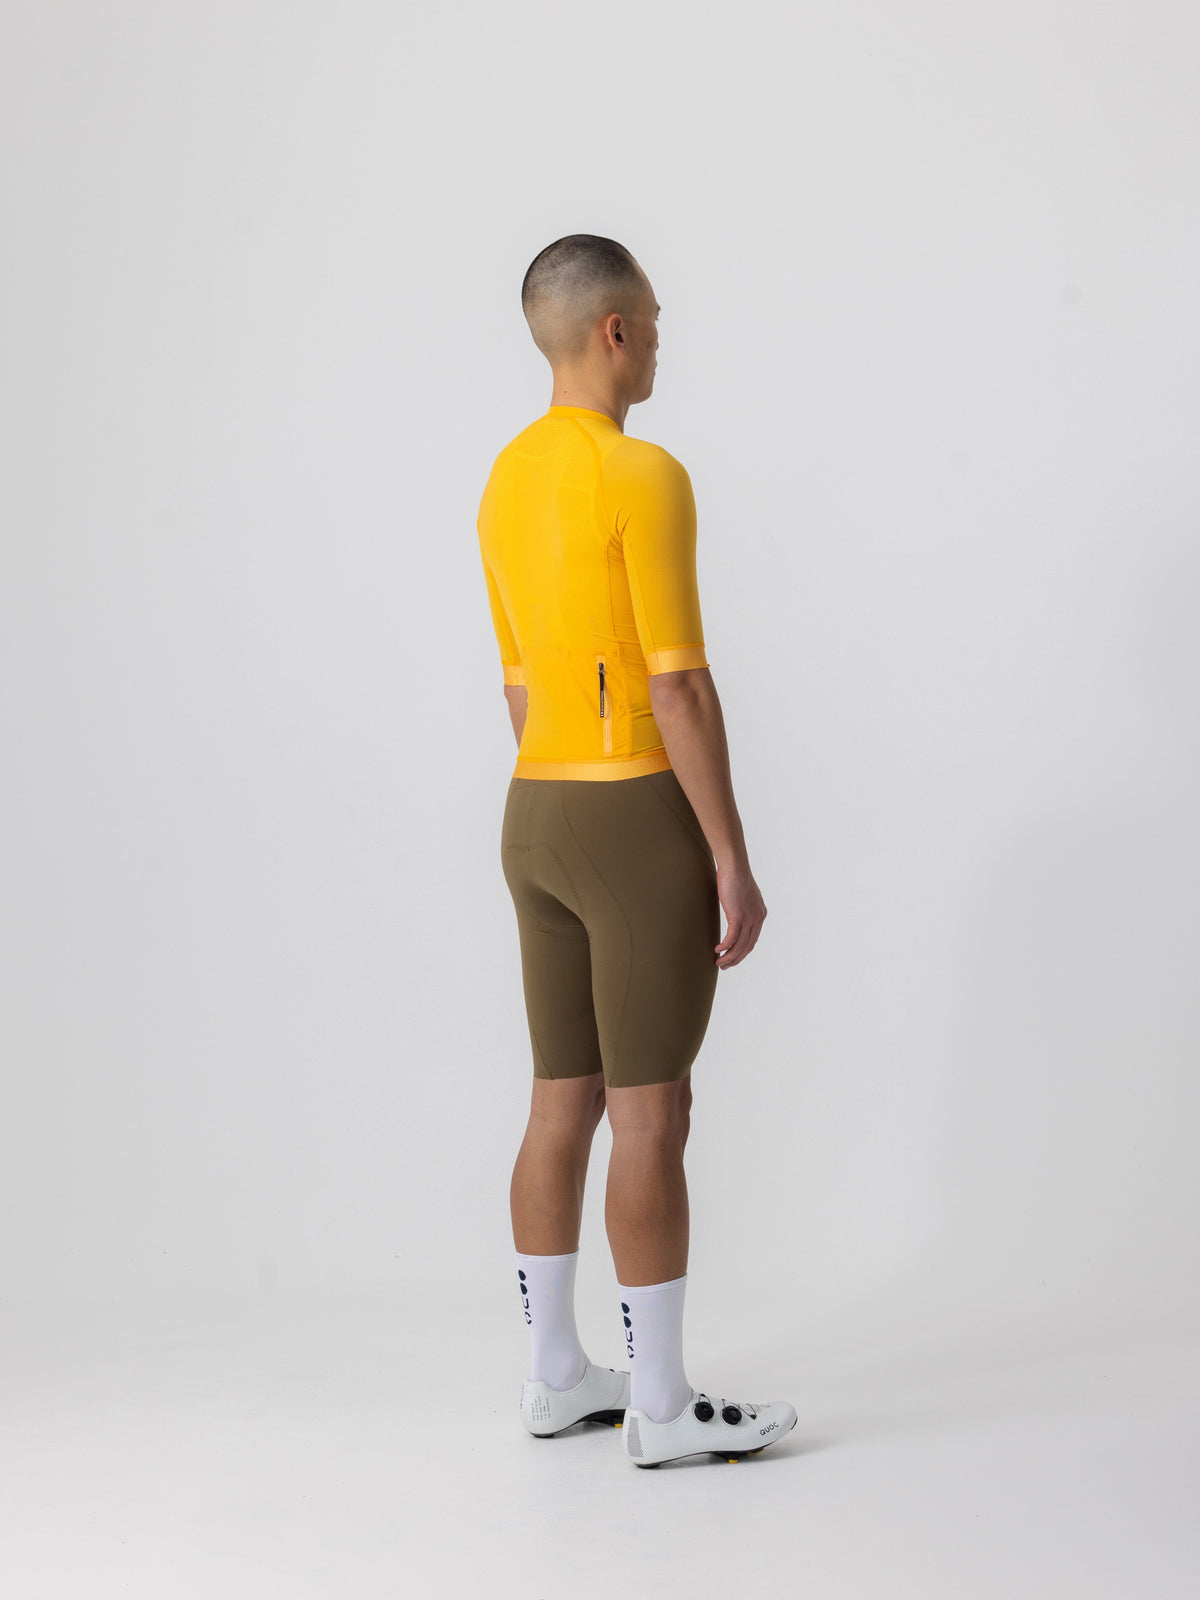 Universal Colours Chroma サイクリングジャージ オレンジ | 超軽量フランス織りナイロンでパフォーマンス向上